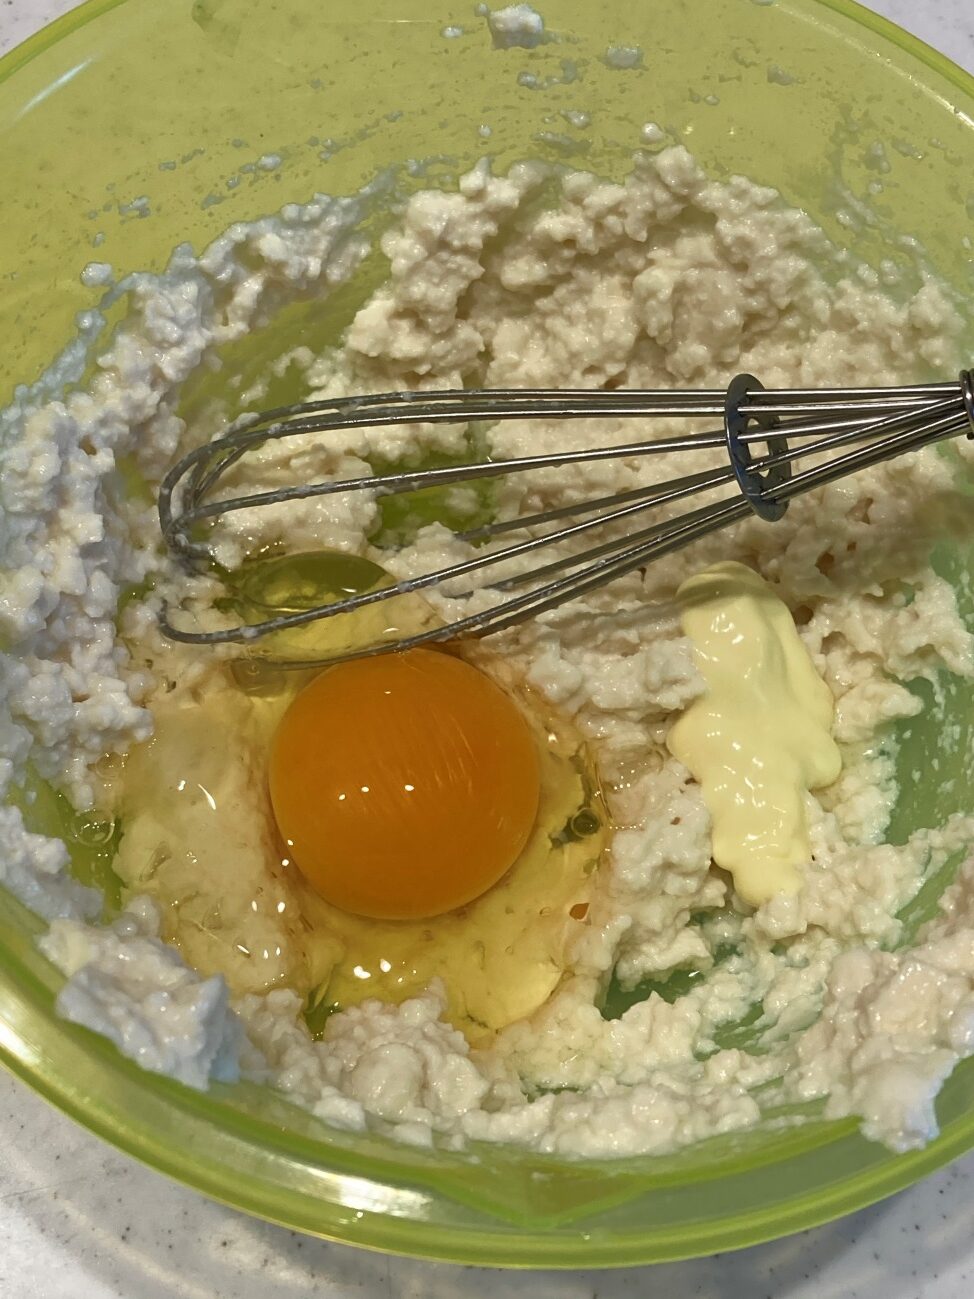 水切りした豆腐・卵・マヨネーズを混ぜ合わせる